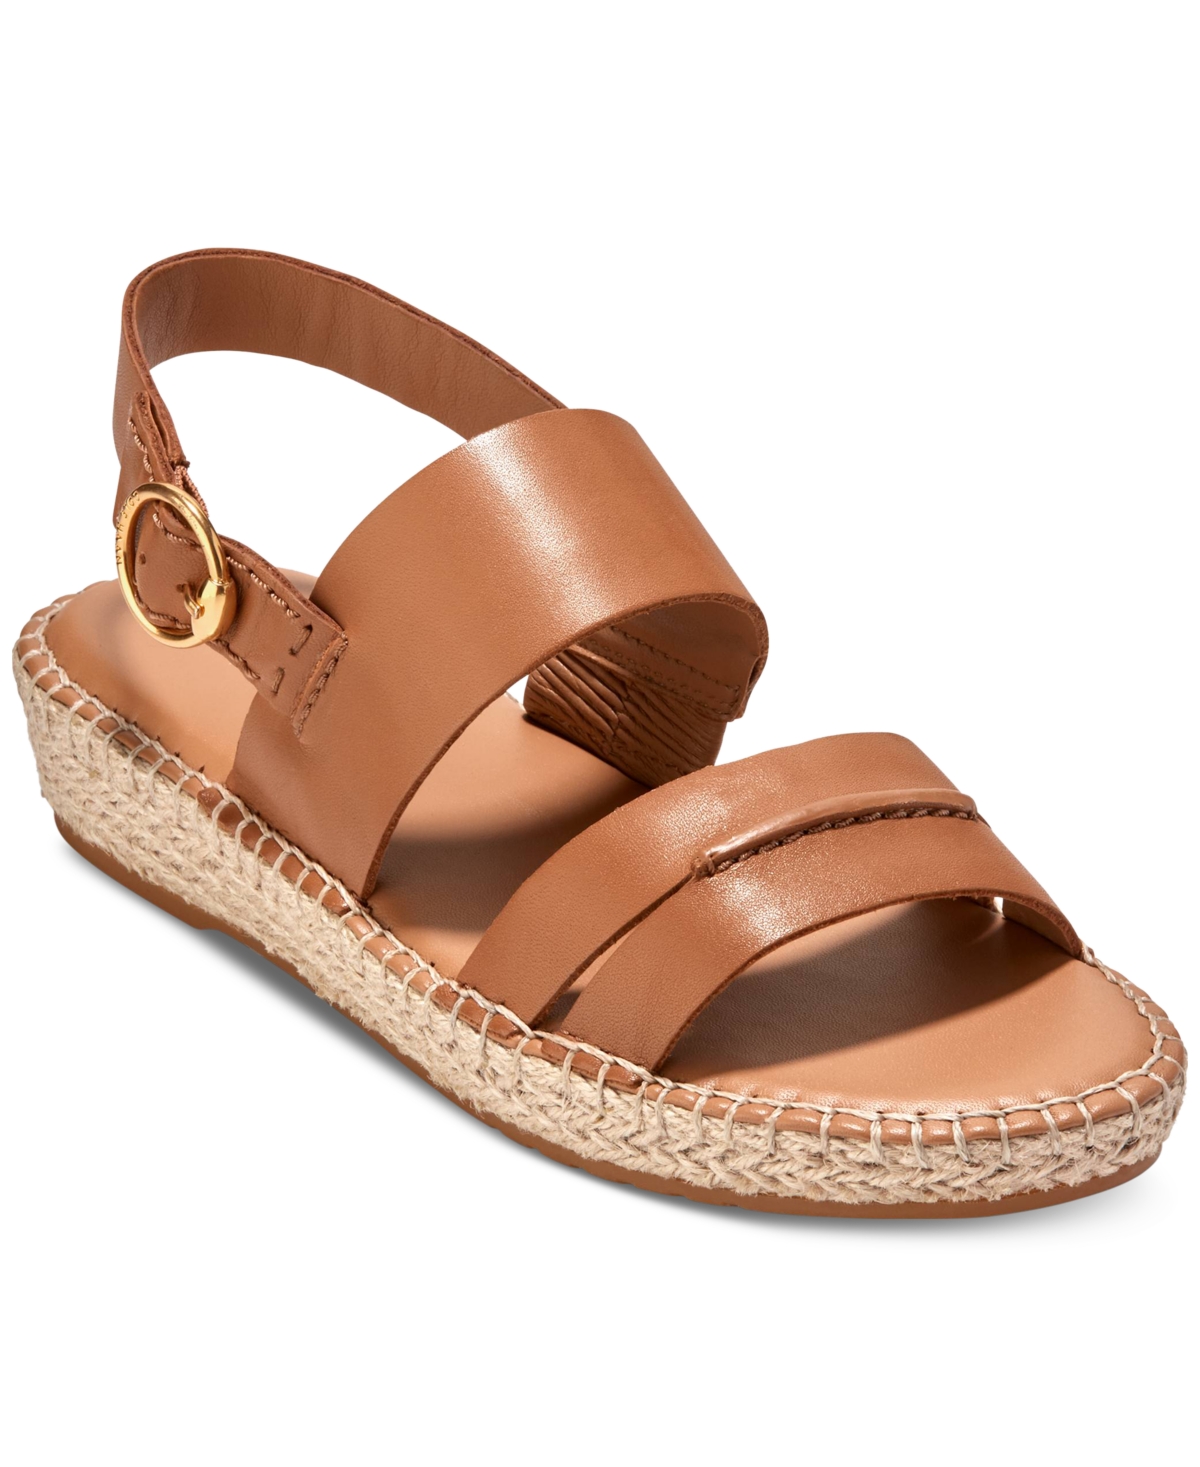 Shop Cole Haan Women's Cloudfeel Tilden Flat Sandals In Pecan Leather